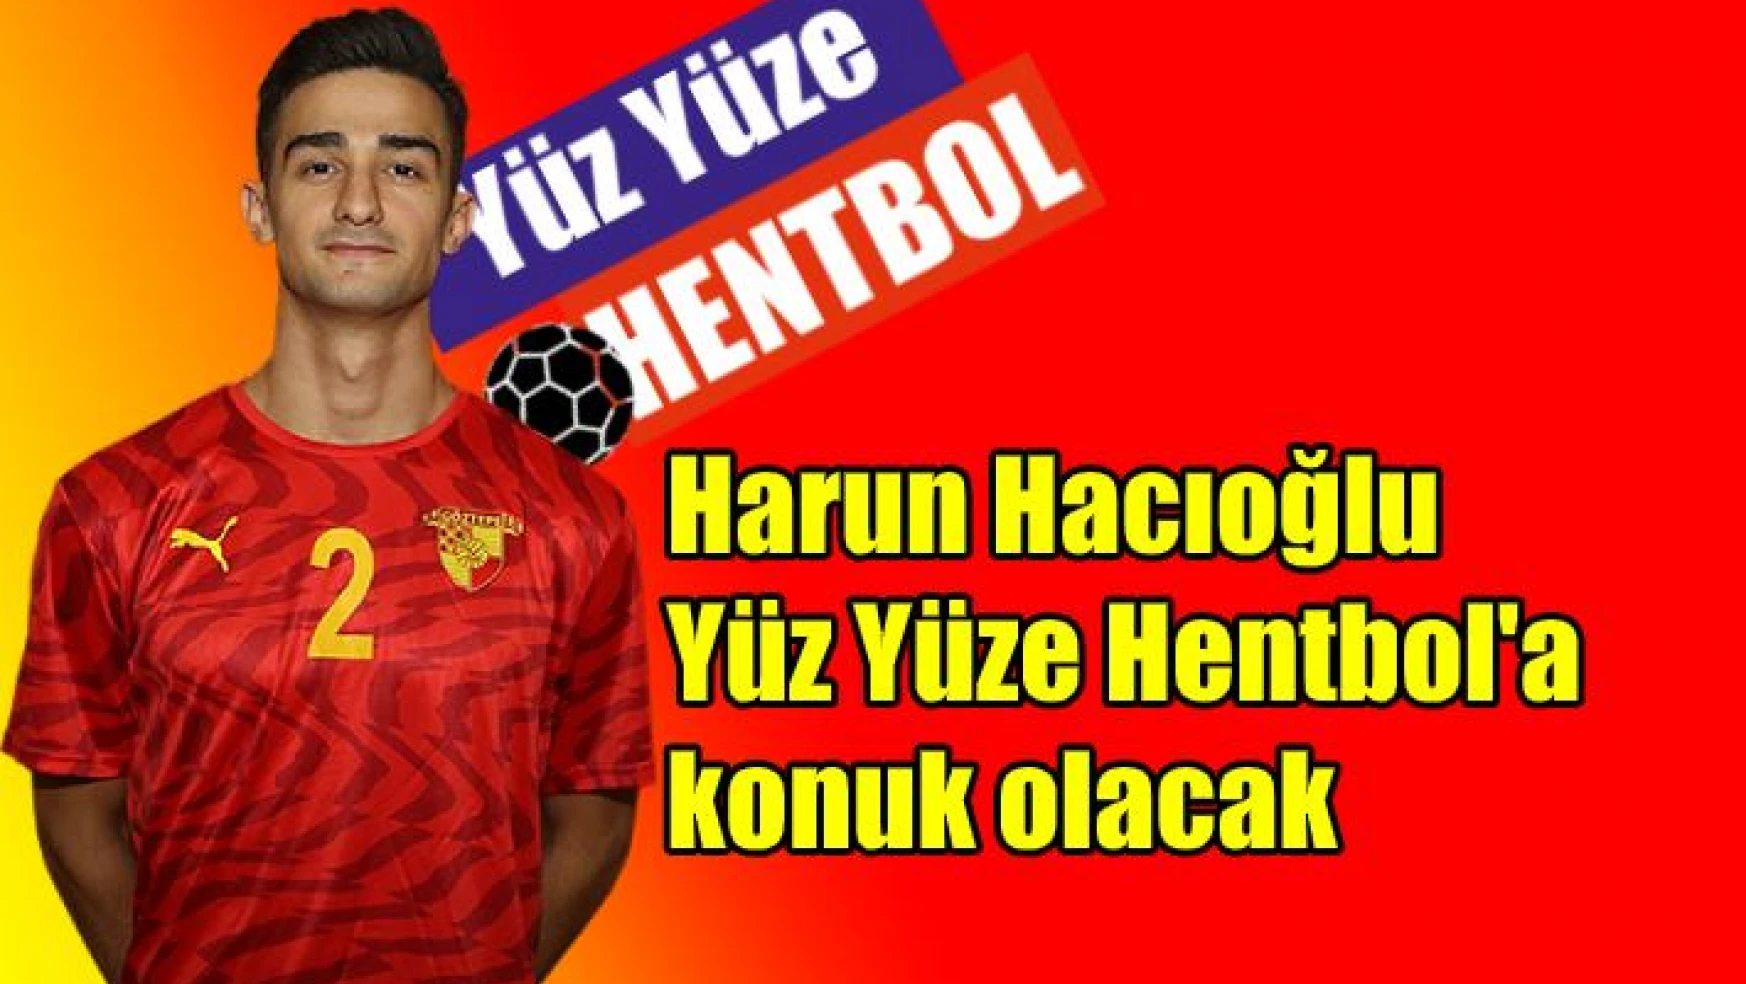 Harun Hacıoğlu, Yüz Yüze Hentbol’a konuk olacak